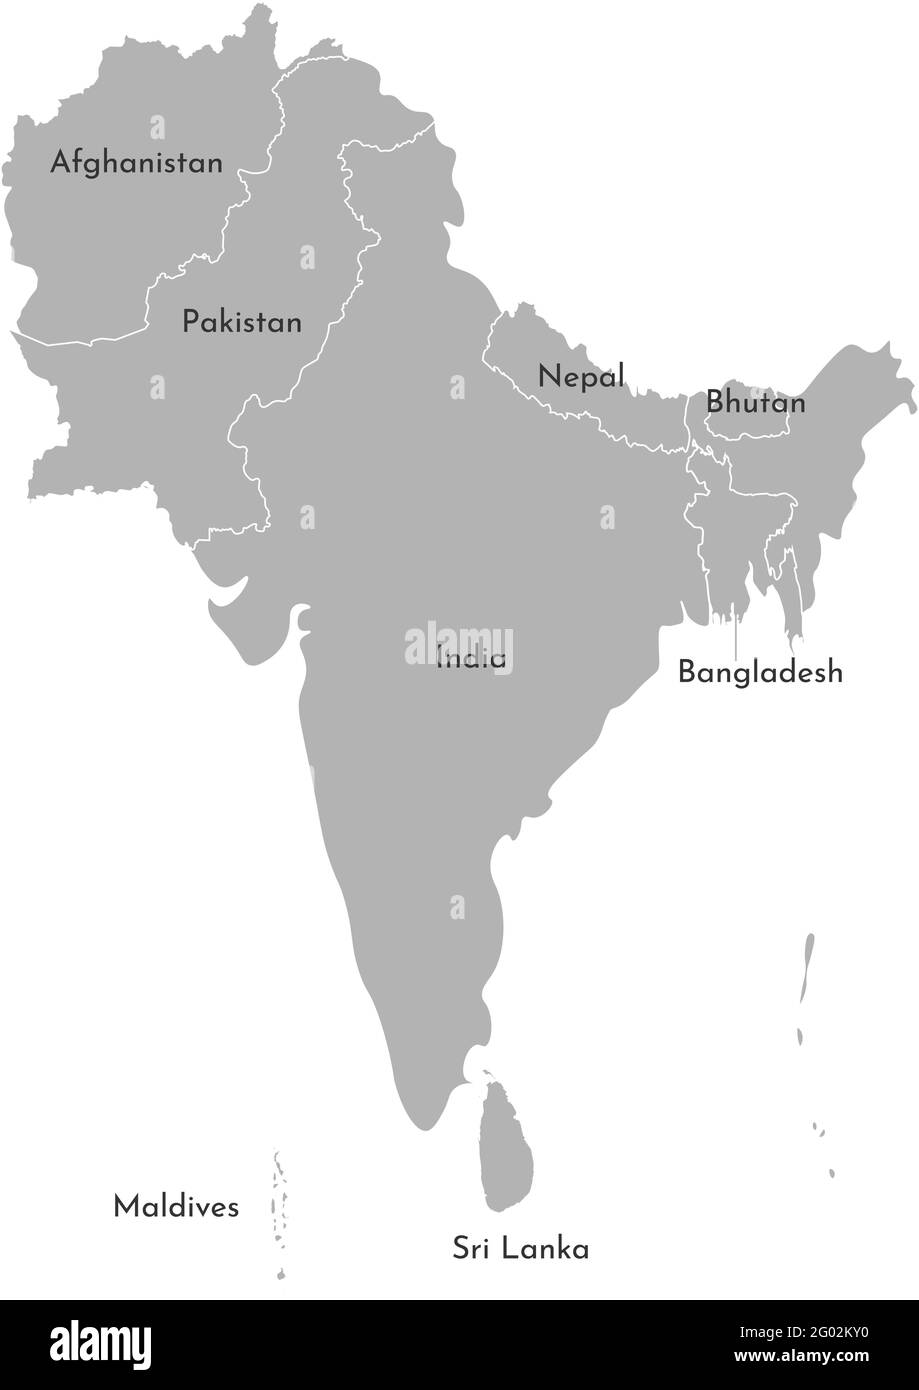 Vektorgrafik Karte der asiatischen Länder. Südregion. Staaten Grenzen von Afghanistan, Pakistan, Indien, Malediven, Nepal, Bhutan, Banghladesh, Sri La Stock Vektor